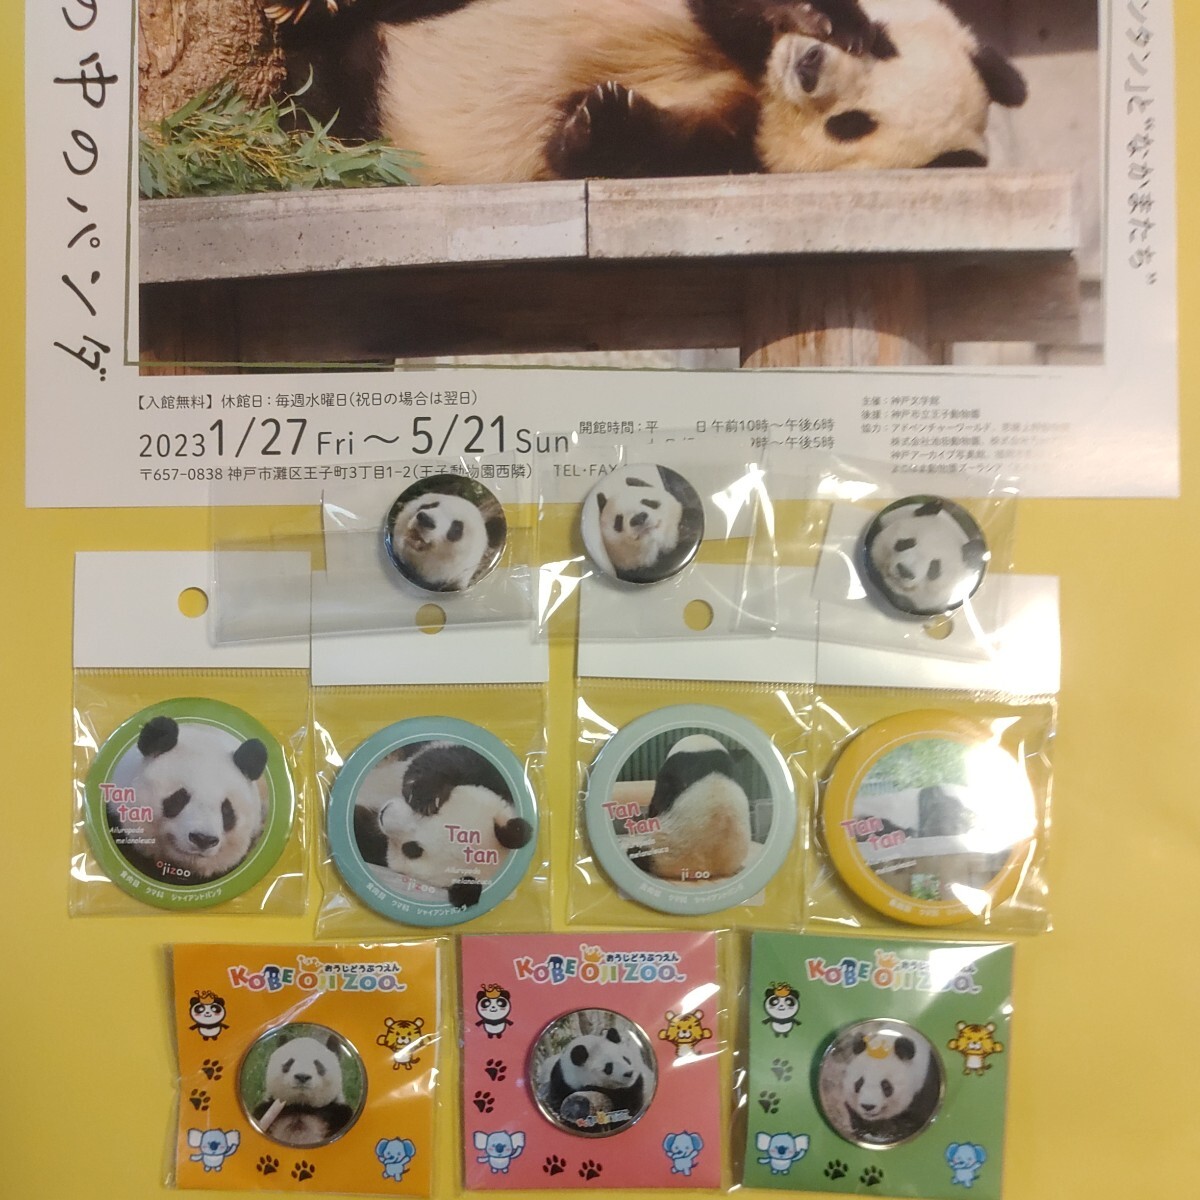 タンタン 王子動物園 缶バッジ ピンバッジ セット パンダ Panda ジャイアントパンダ シャンシャン シャオシャオ レイレイの画像3